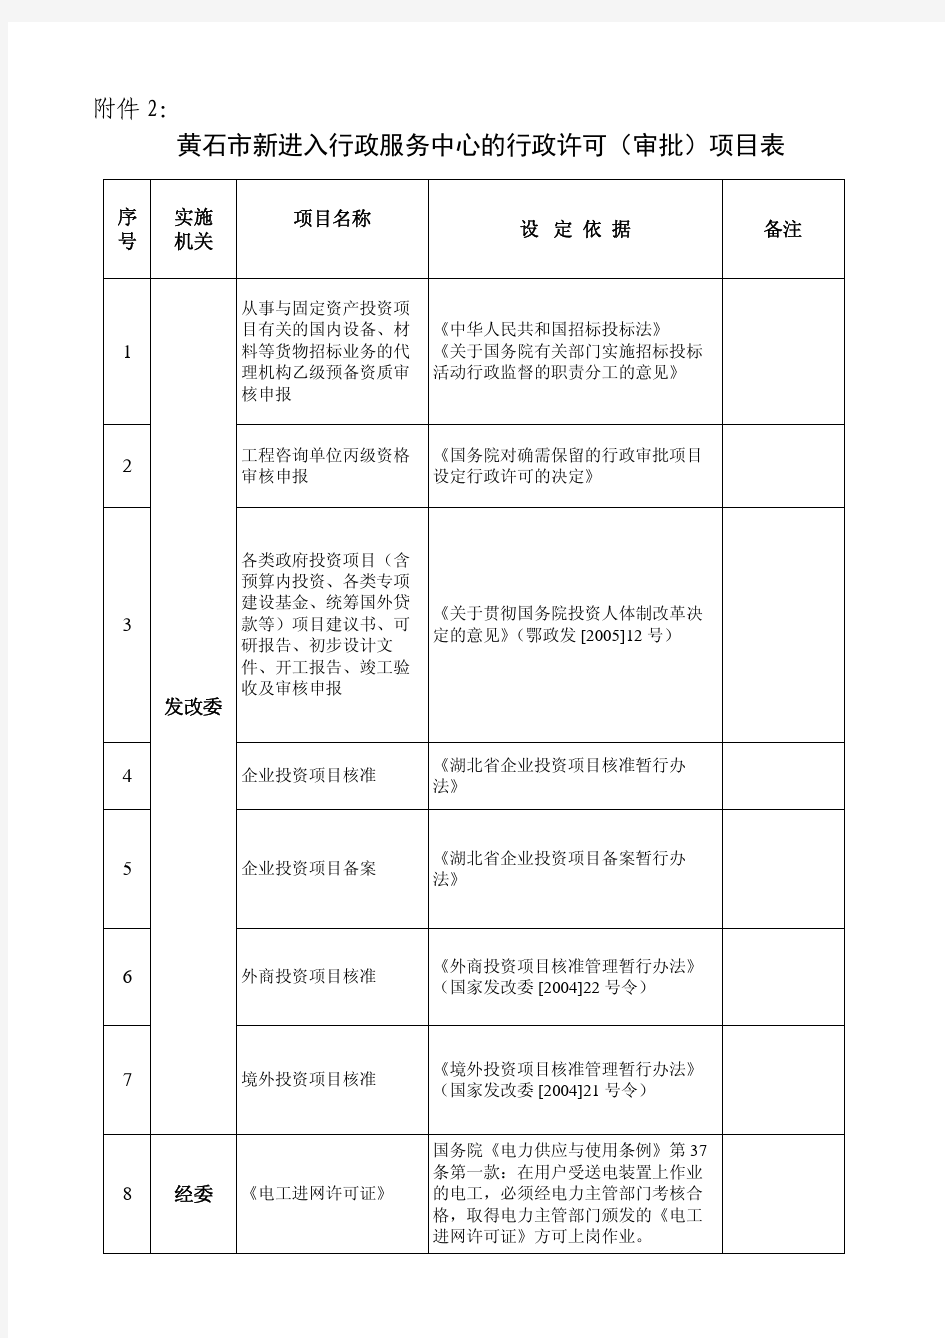 黄石市新进入行政服务中心的行政许可(审批)项目表